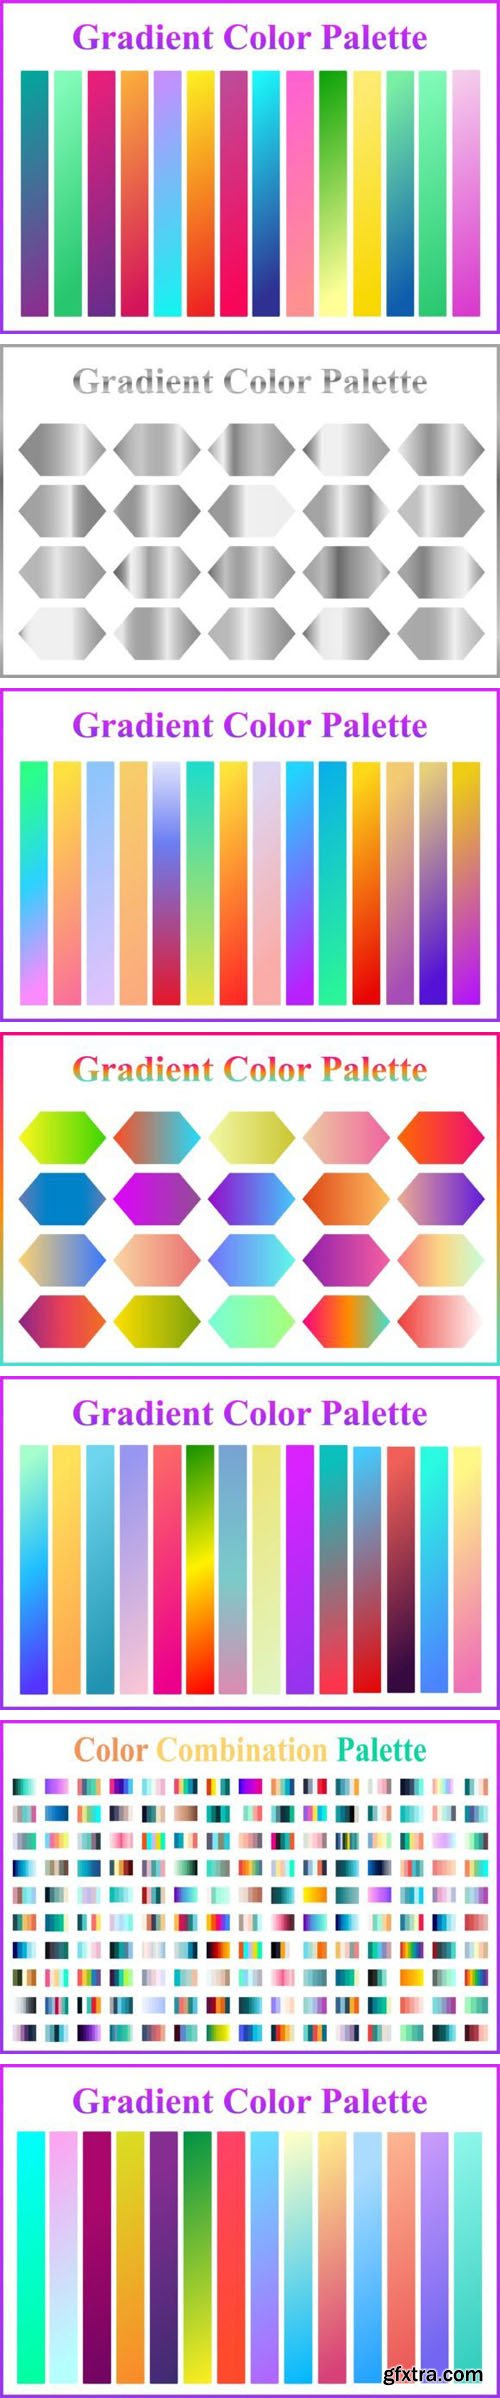 7 Gradient Color Palettes Vector Sets